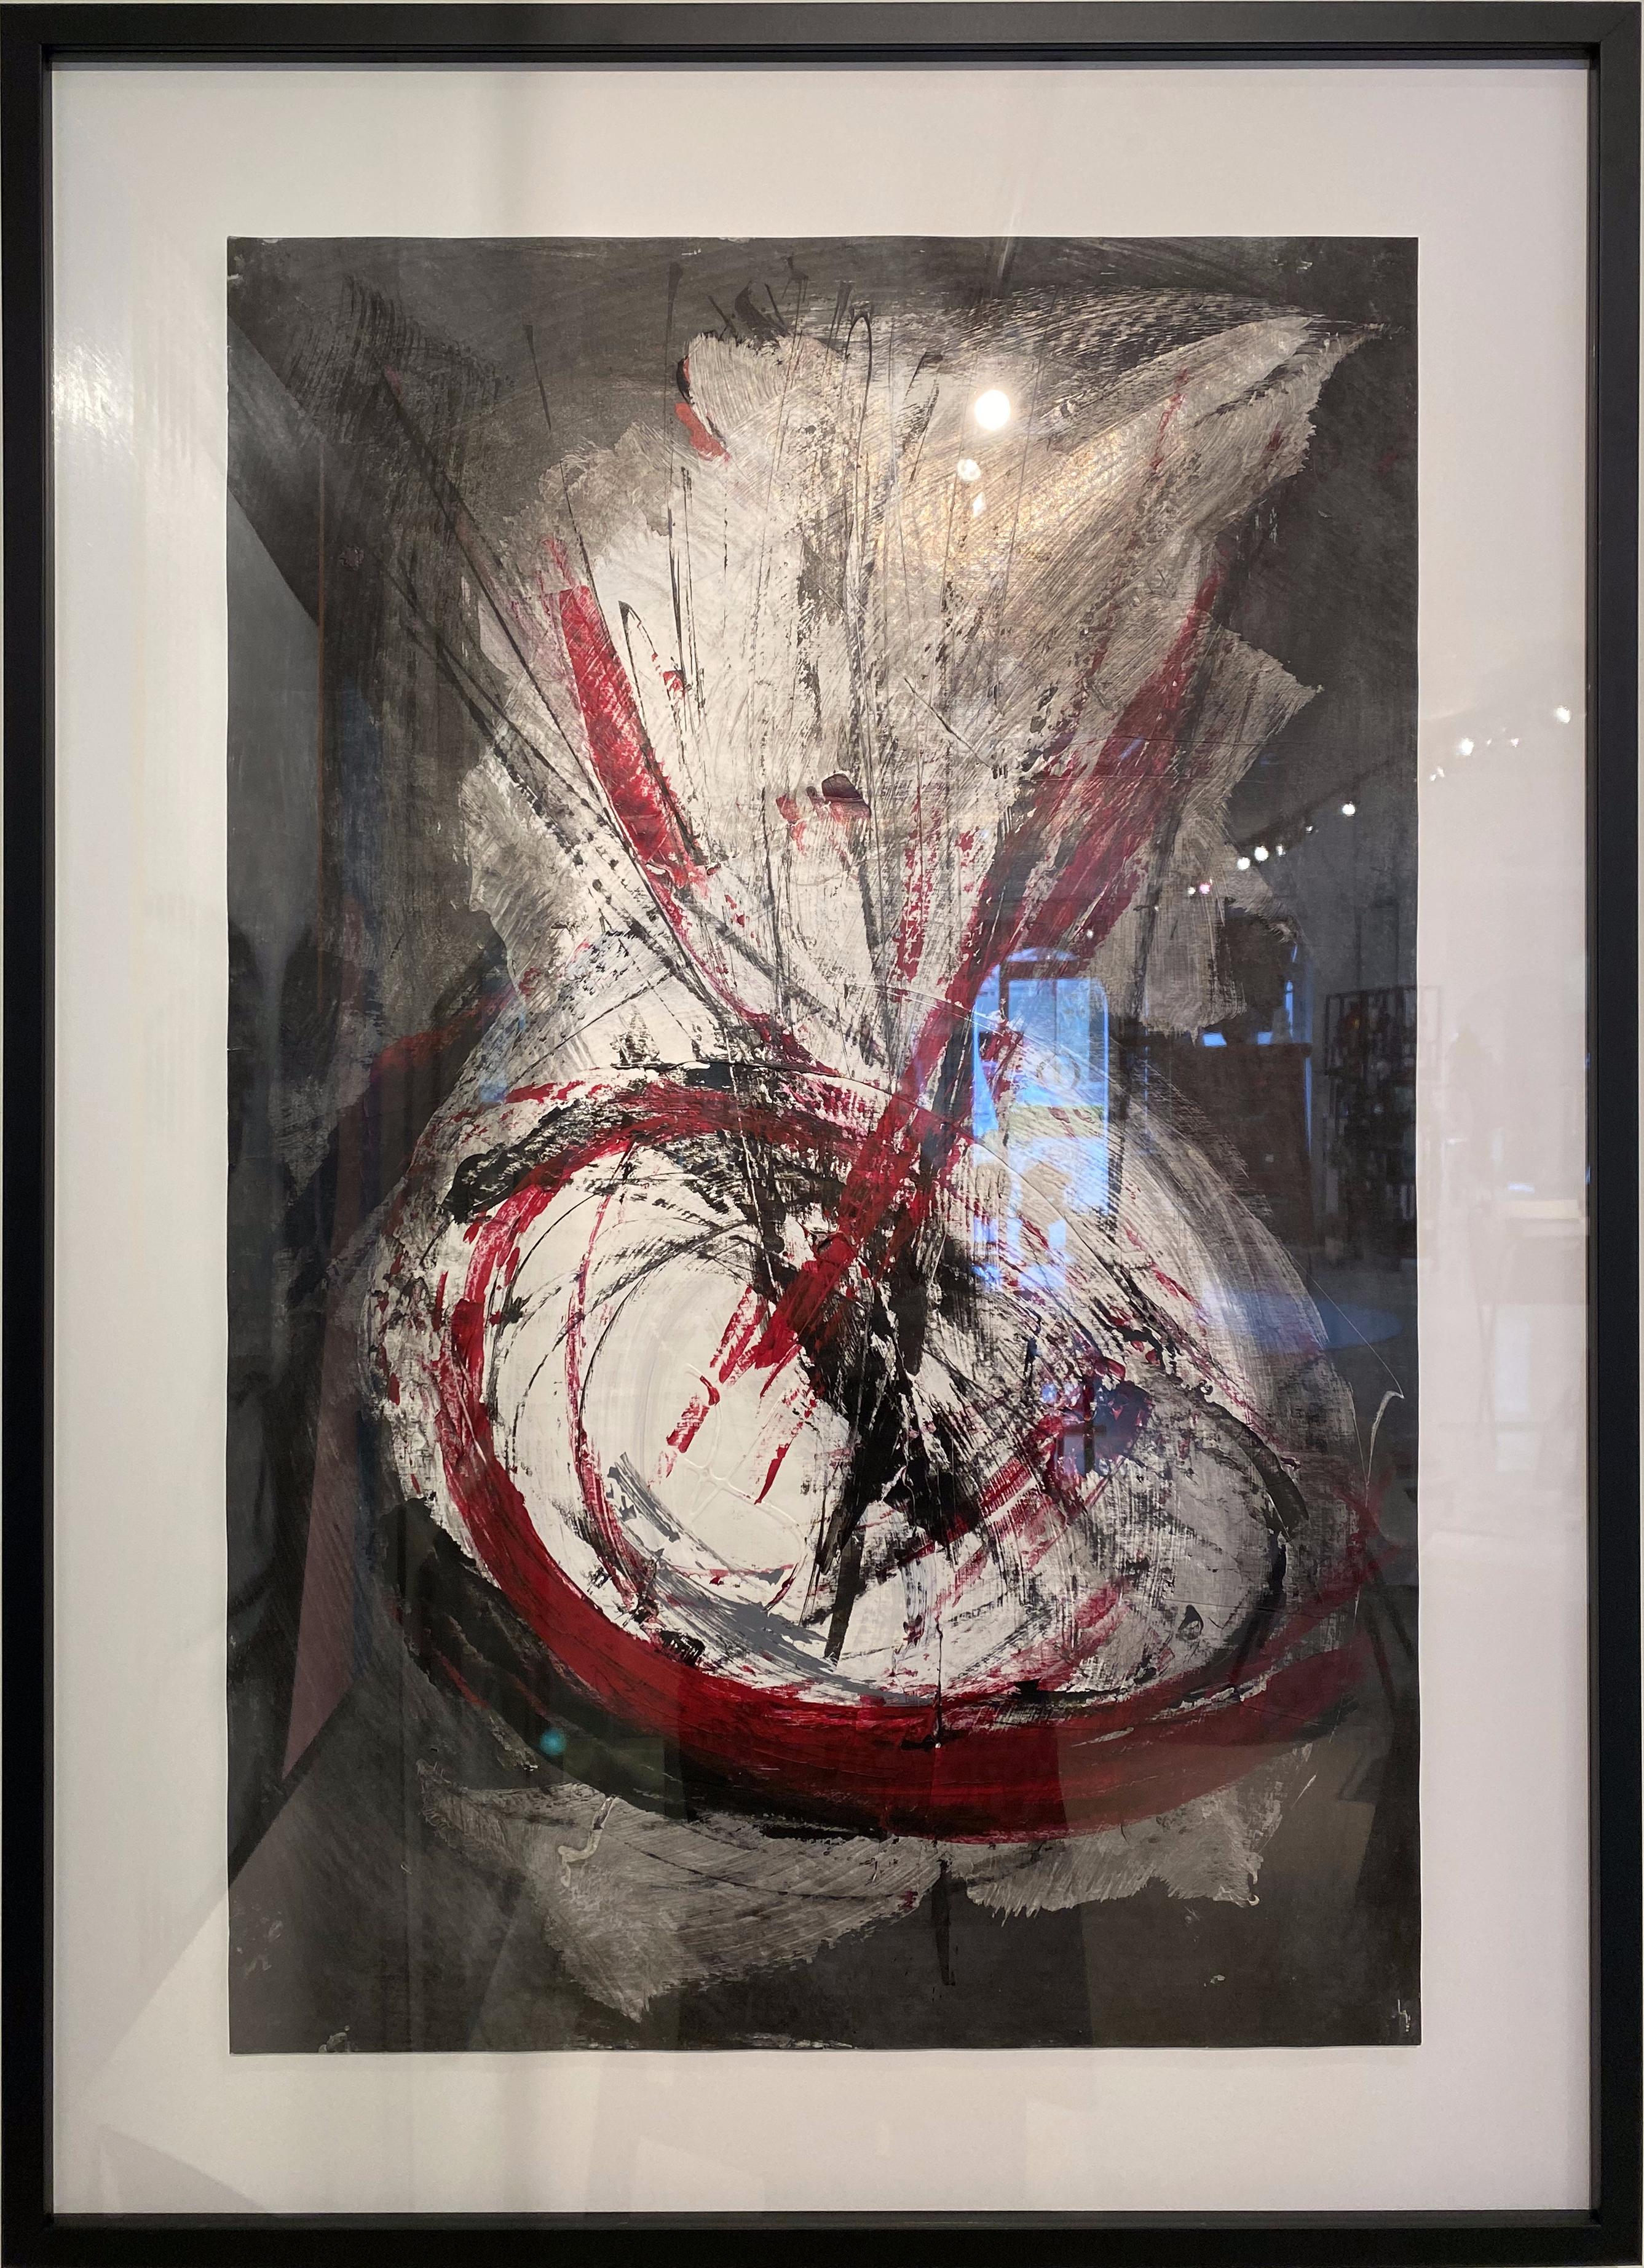 Dieses Gemälde von Marko Kratohvil in Acryl und Tusche auf Papier ist eine Explosion von roten, schwarzen, weißen und grauen Farben, gemalt mit energischen gestischen Bewegungen.  Große konzentrische Kreise bilden die Basis des Gemäldes mit